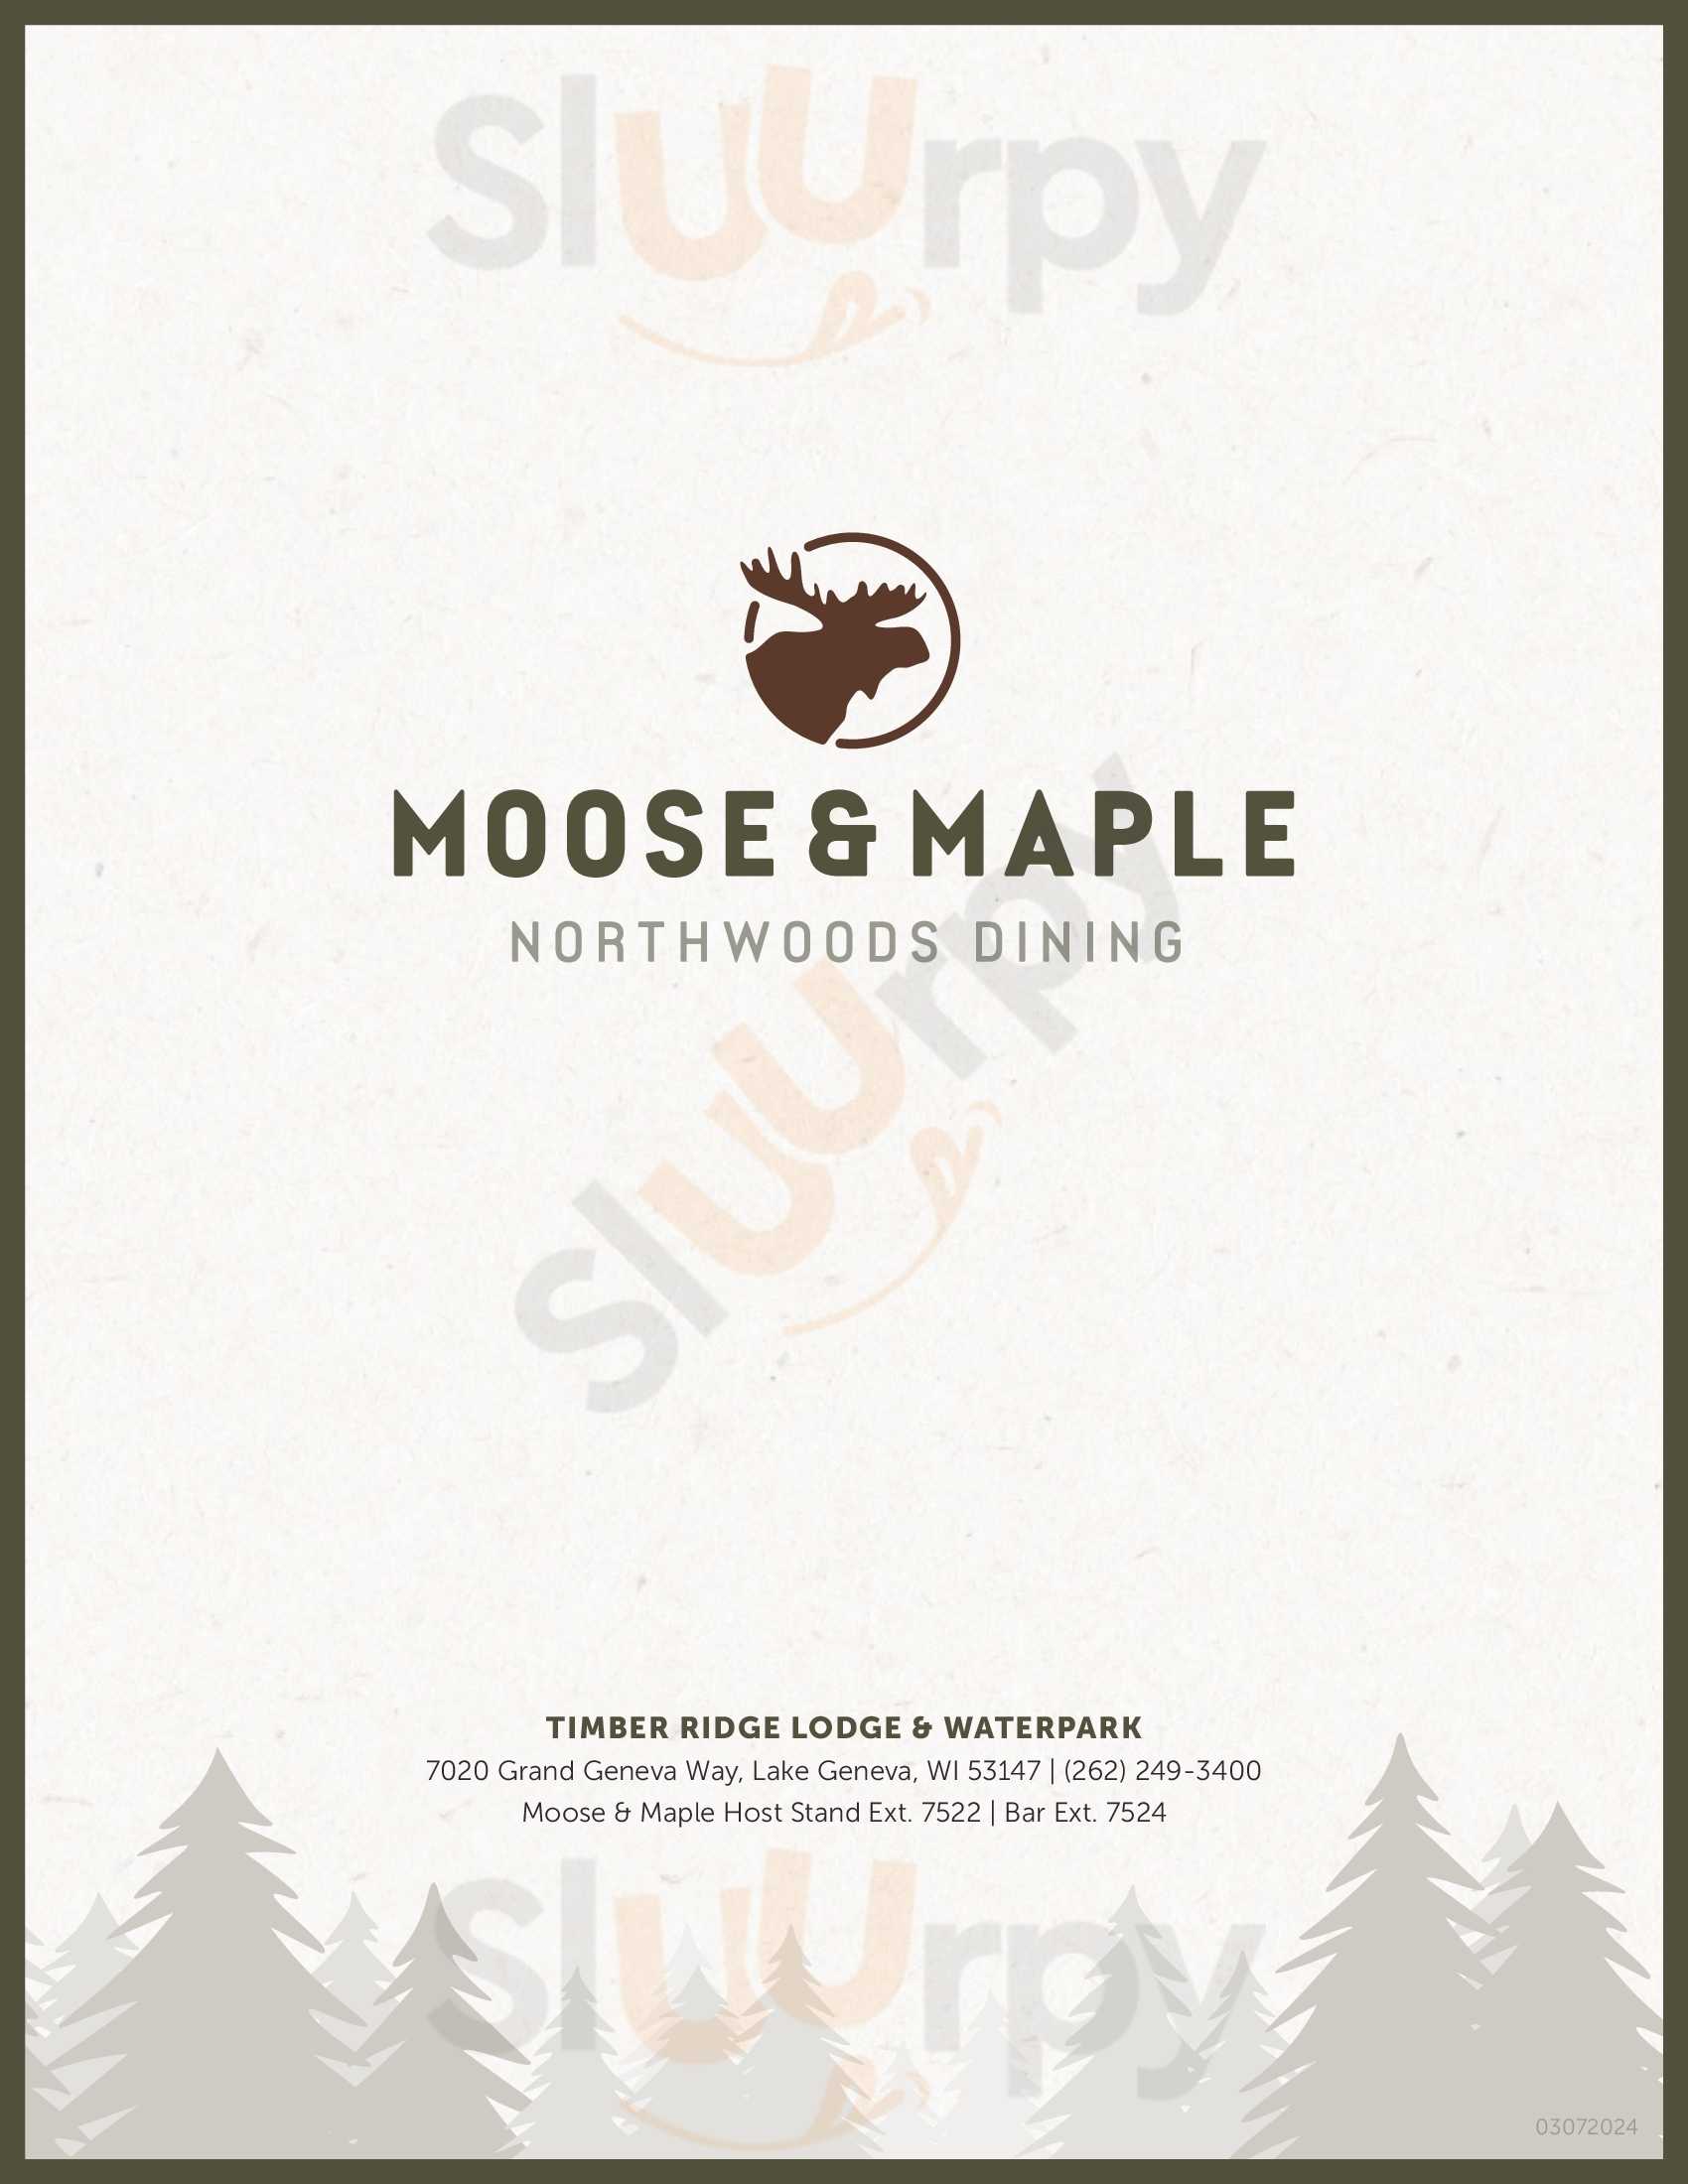 Moose & Maple At Timber Ridge Lodge Lake Geneva Menu - 1